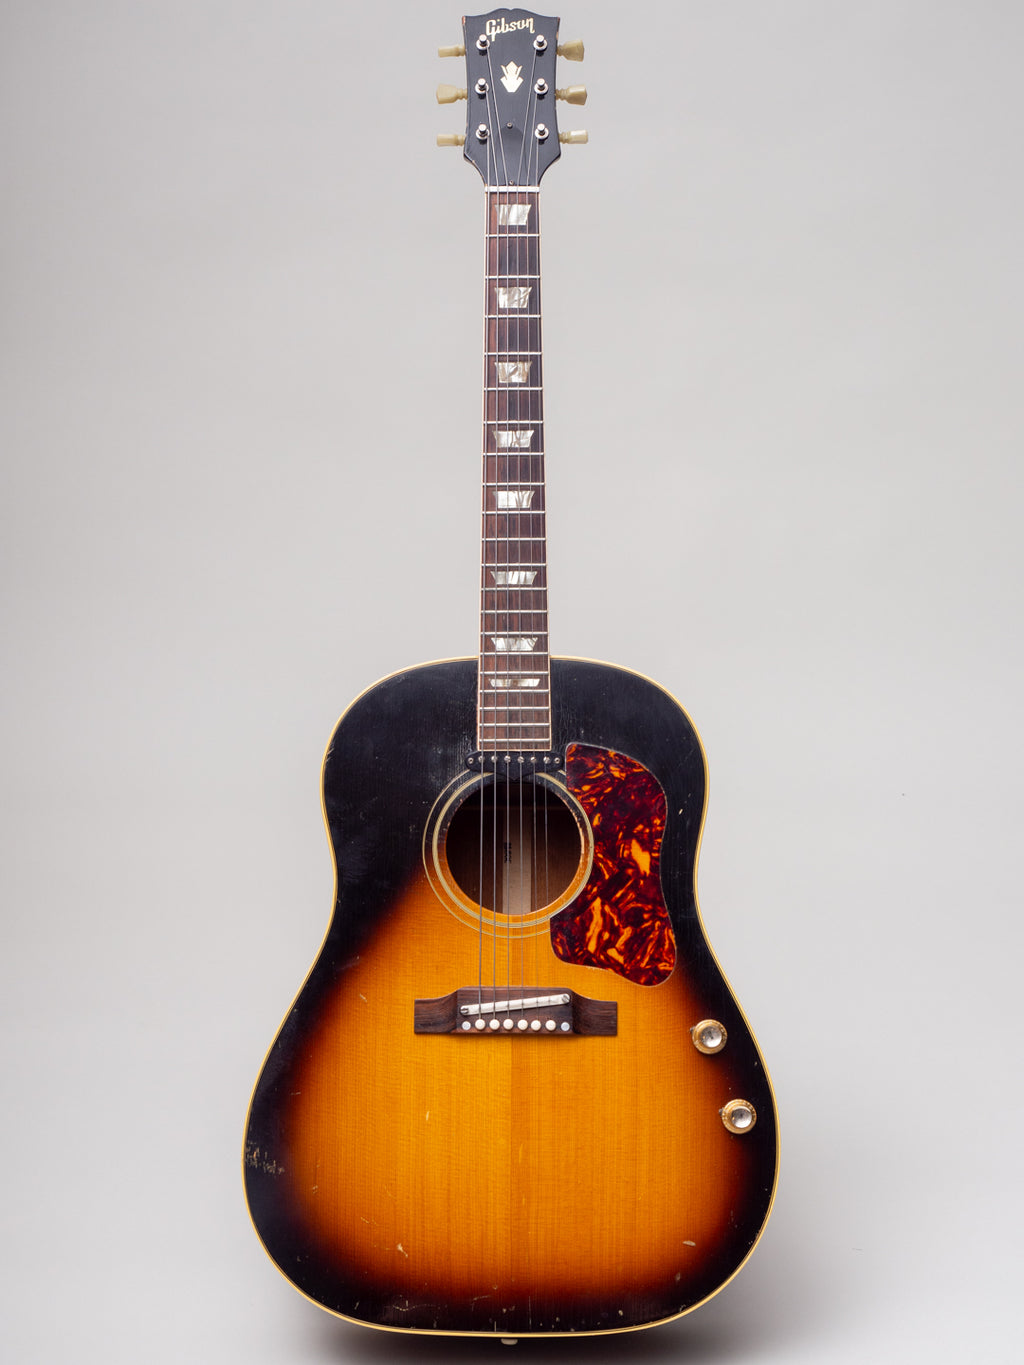 1965 Gibson J-160E